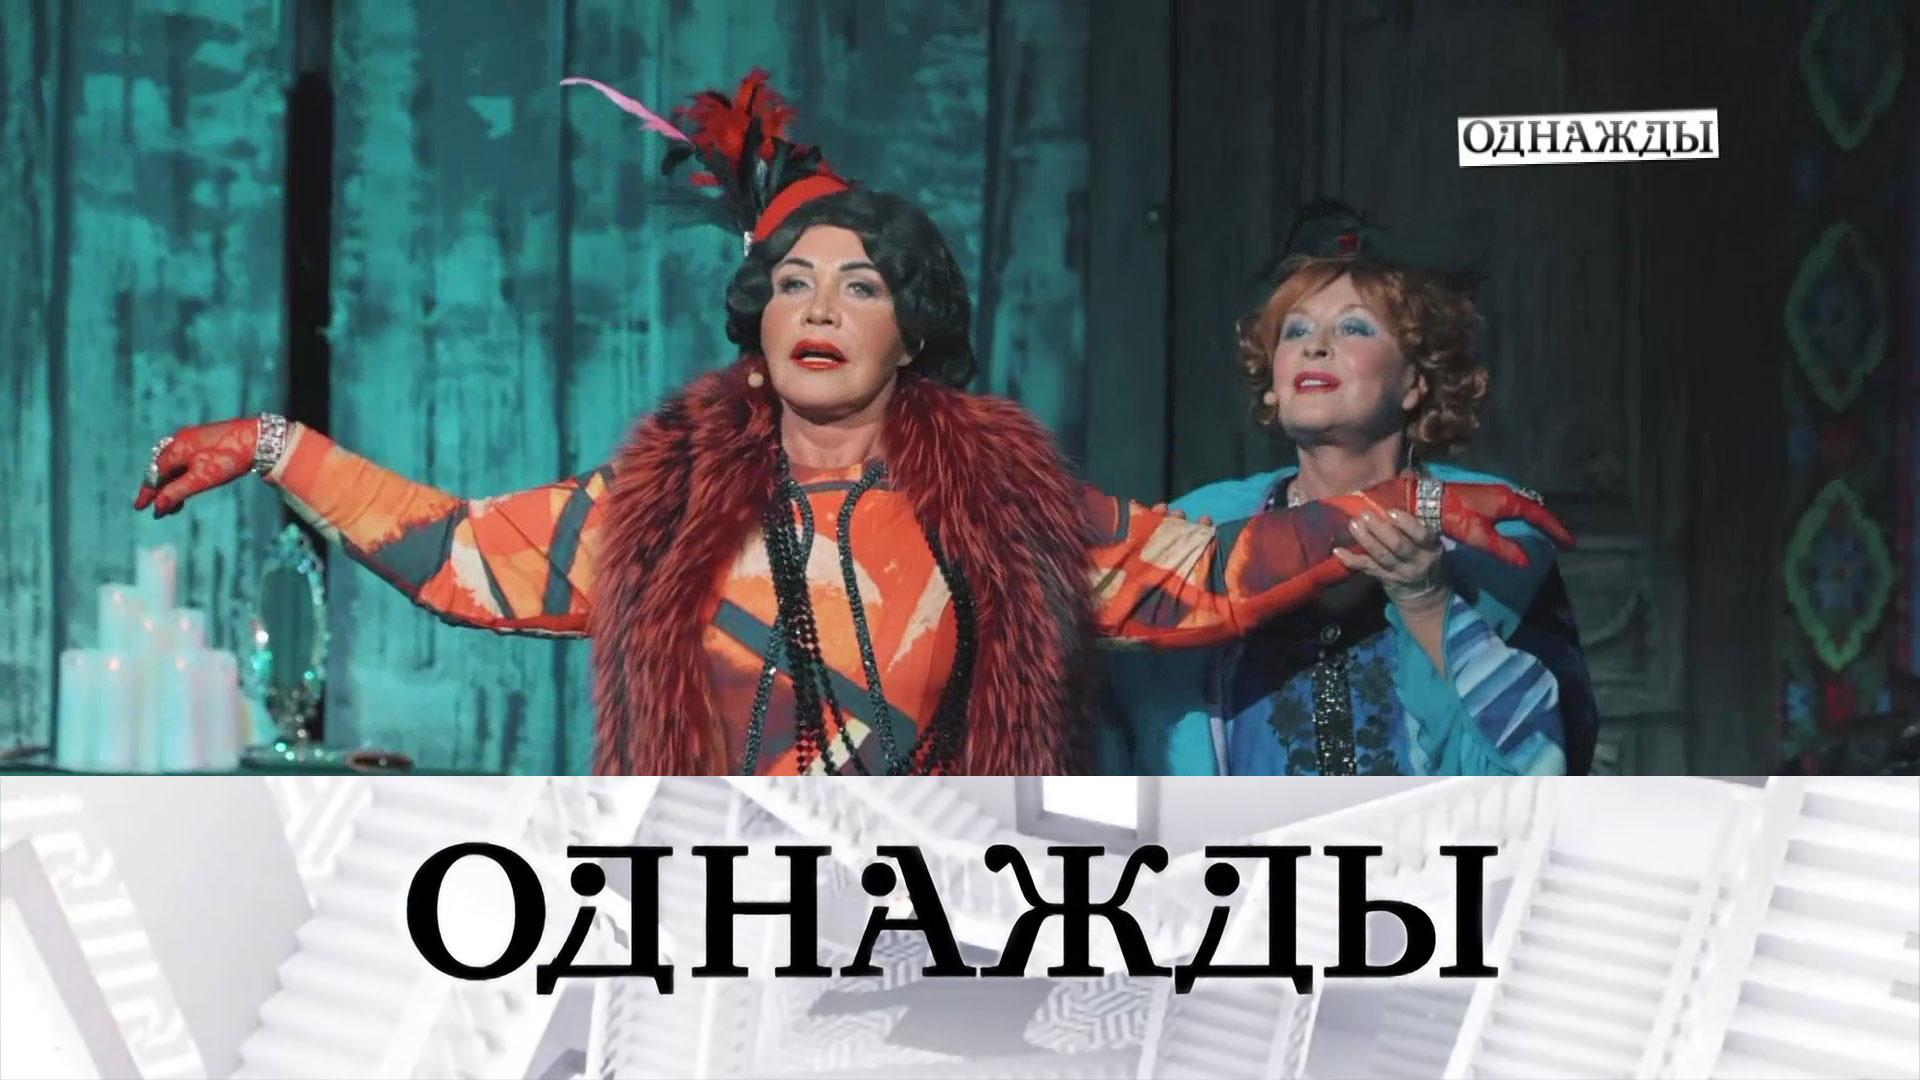 Королева русской песни Надежда Бабкина и юбилей мюзикла «Ничего не бойся, я с тобой» | «Однажды...»